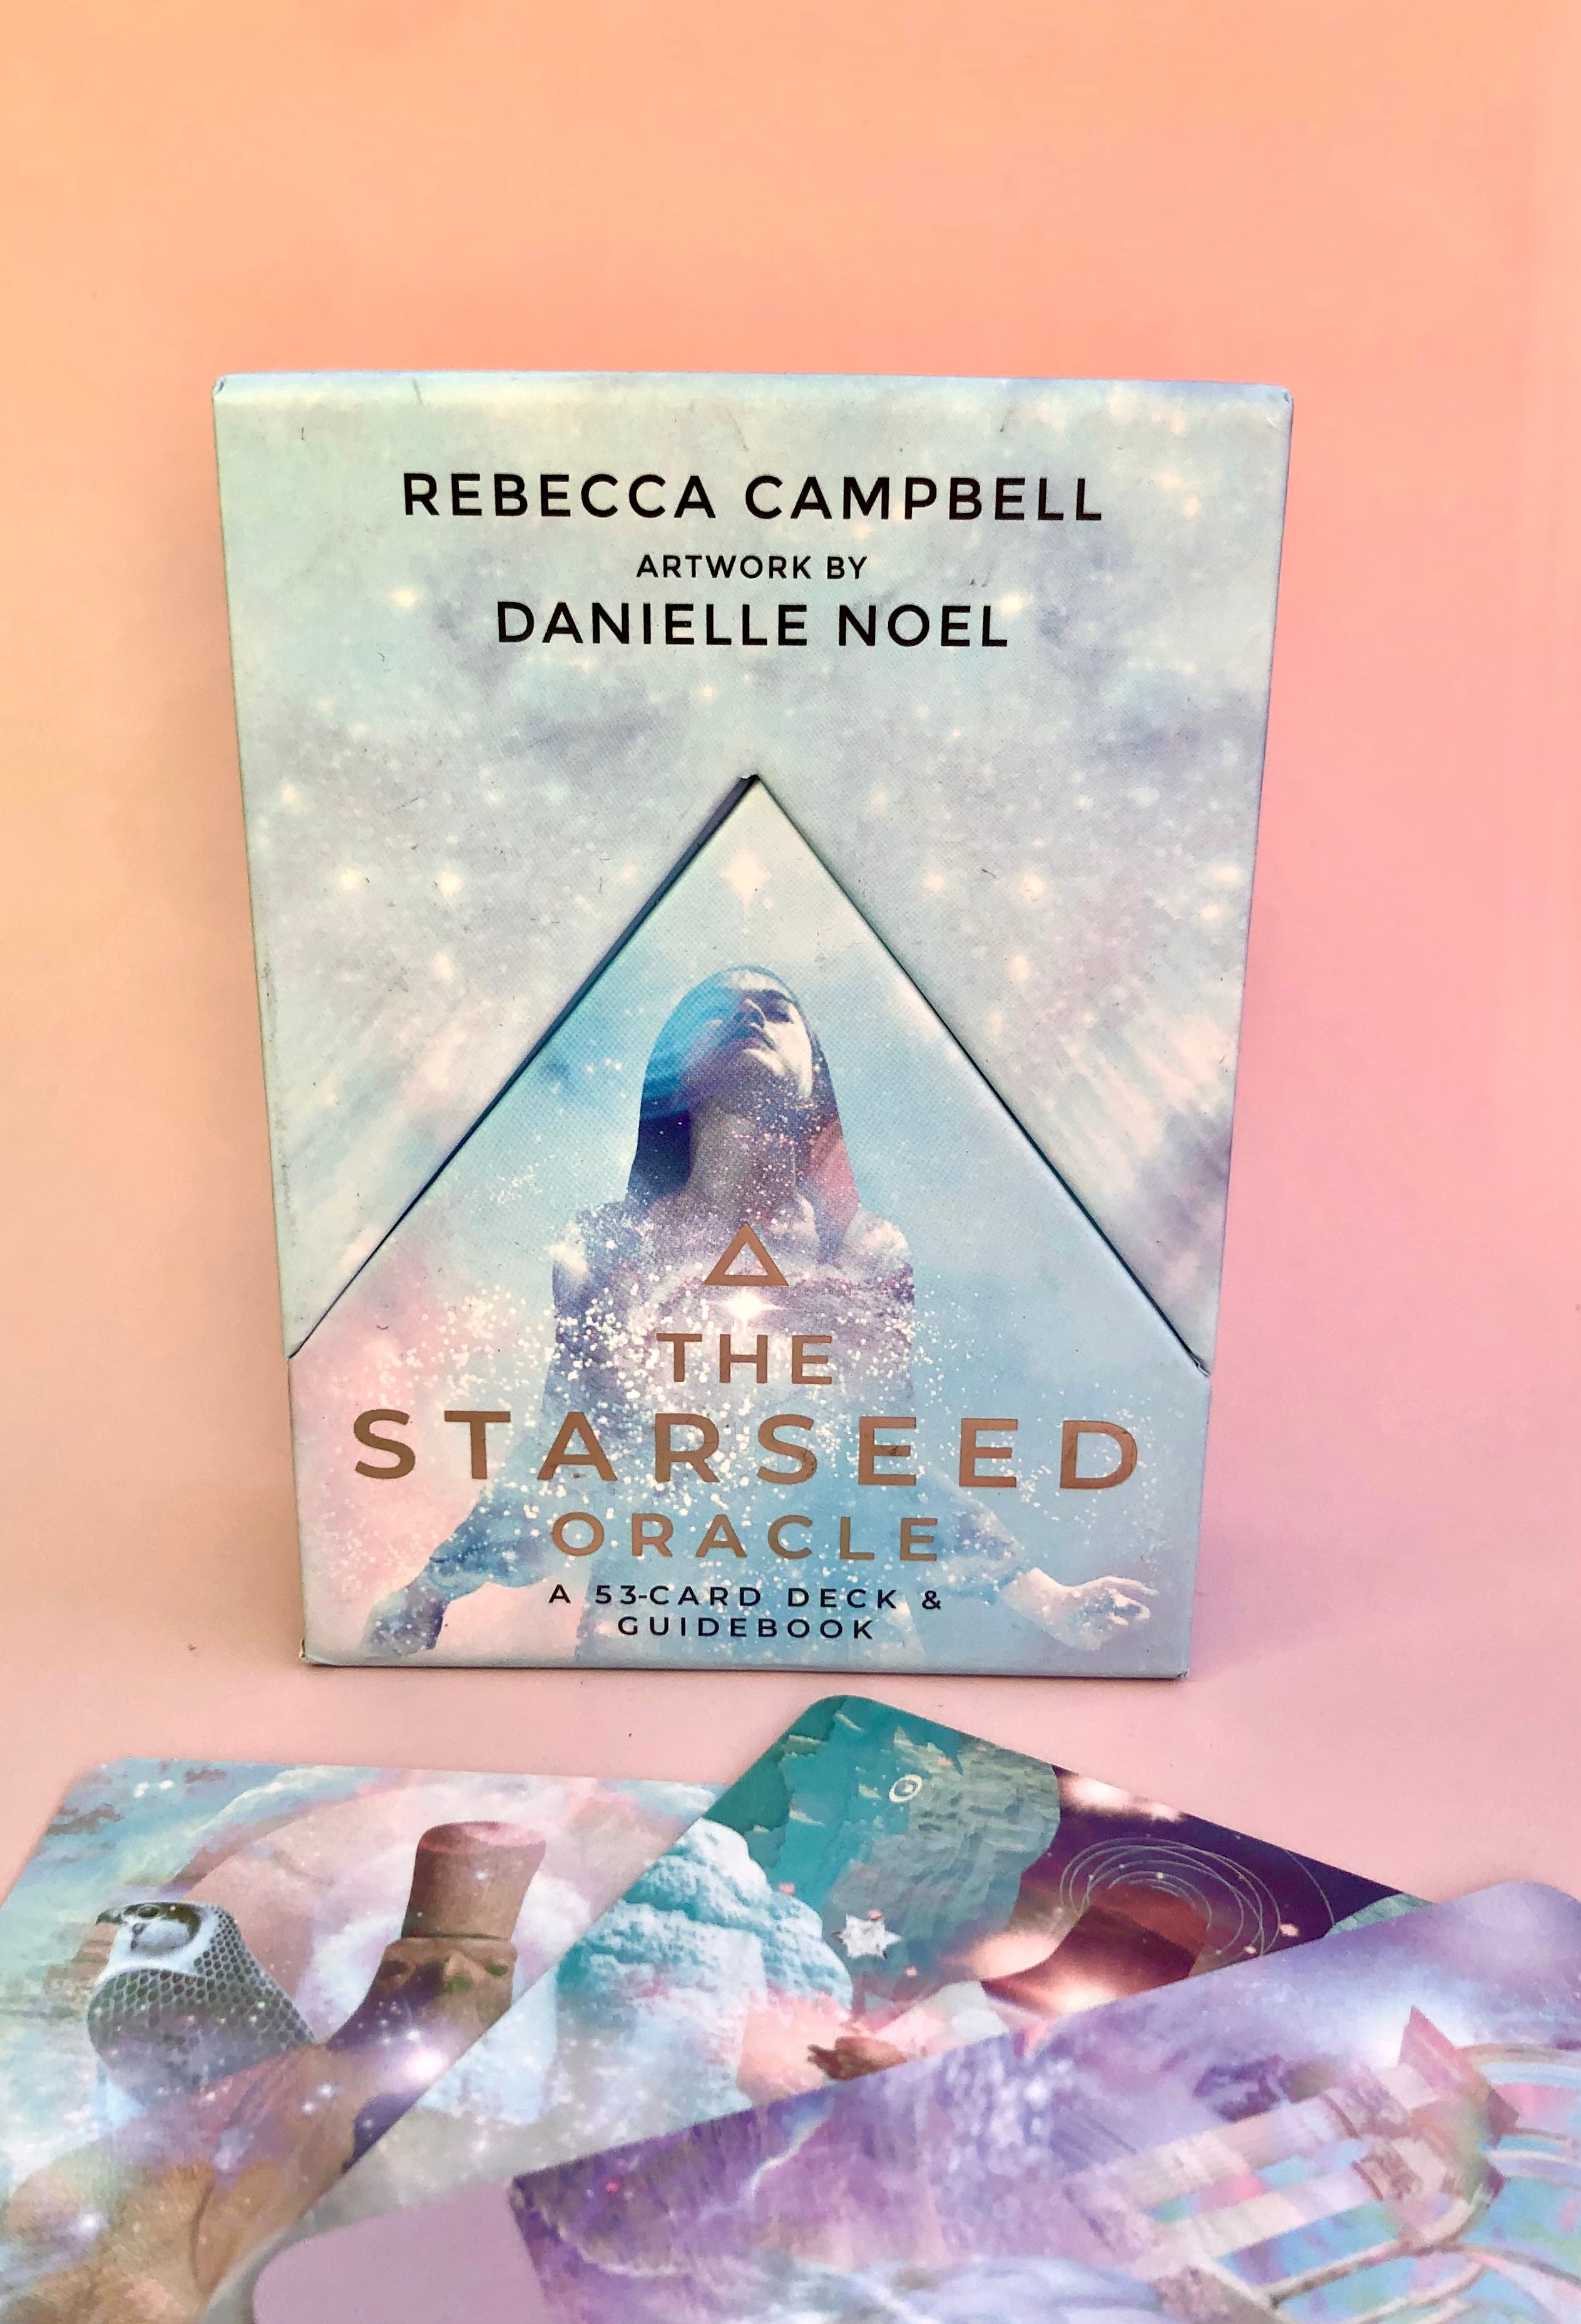 Månesøster Krystaller Starseed orakelkort Engelsk kortsæt + Guidebog - Skabt af Rebecca Campbell - Illustreret af Danielle Noel